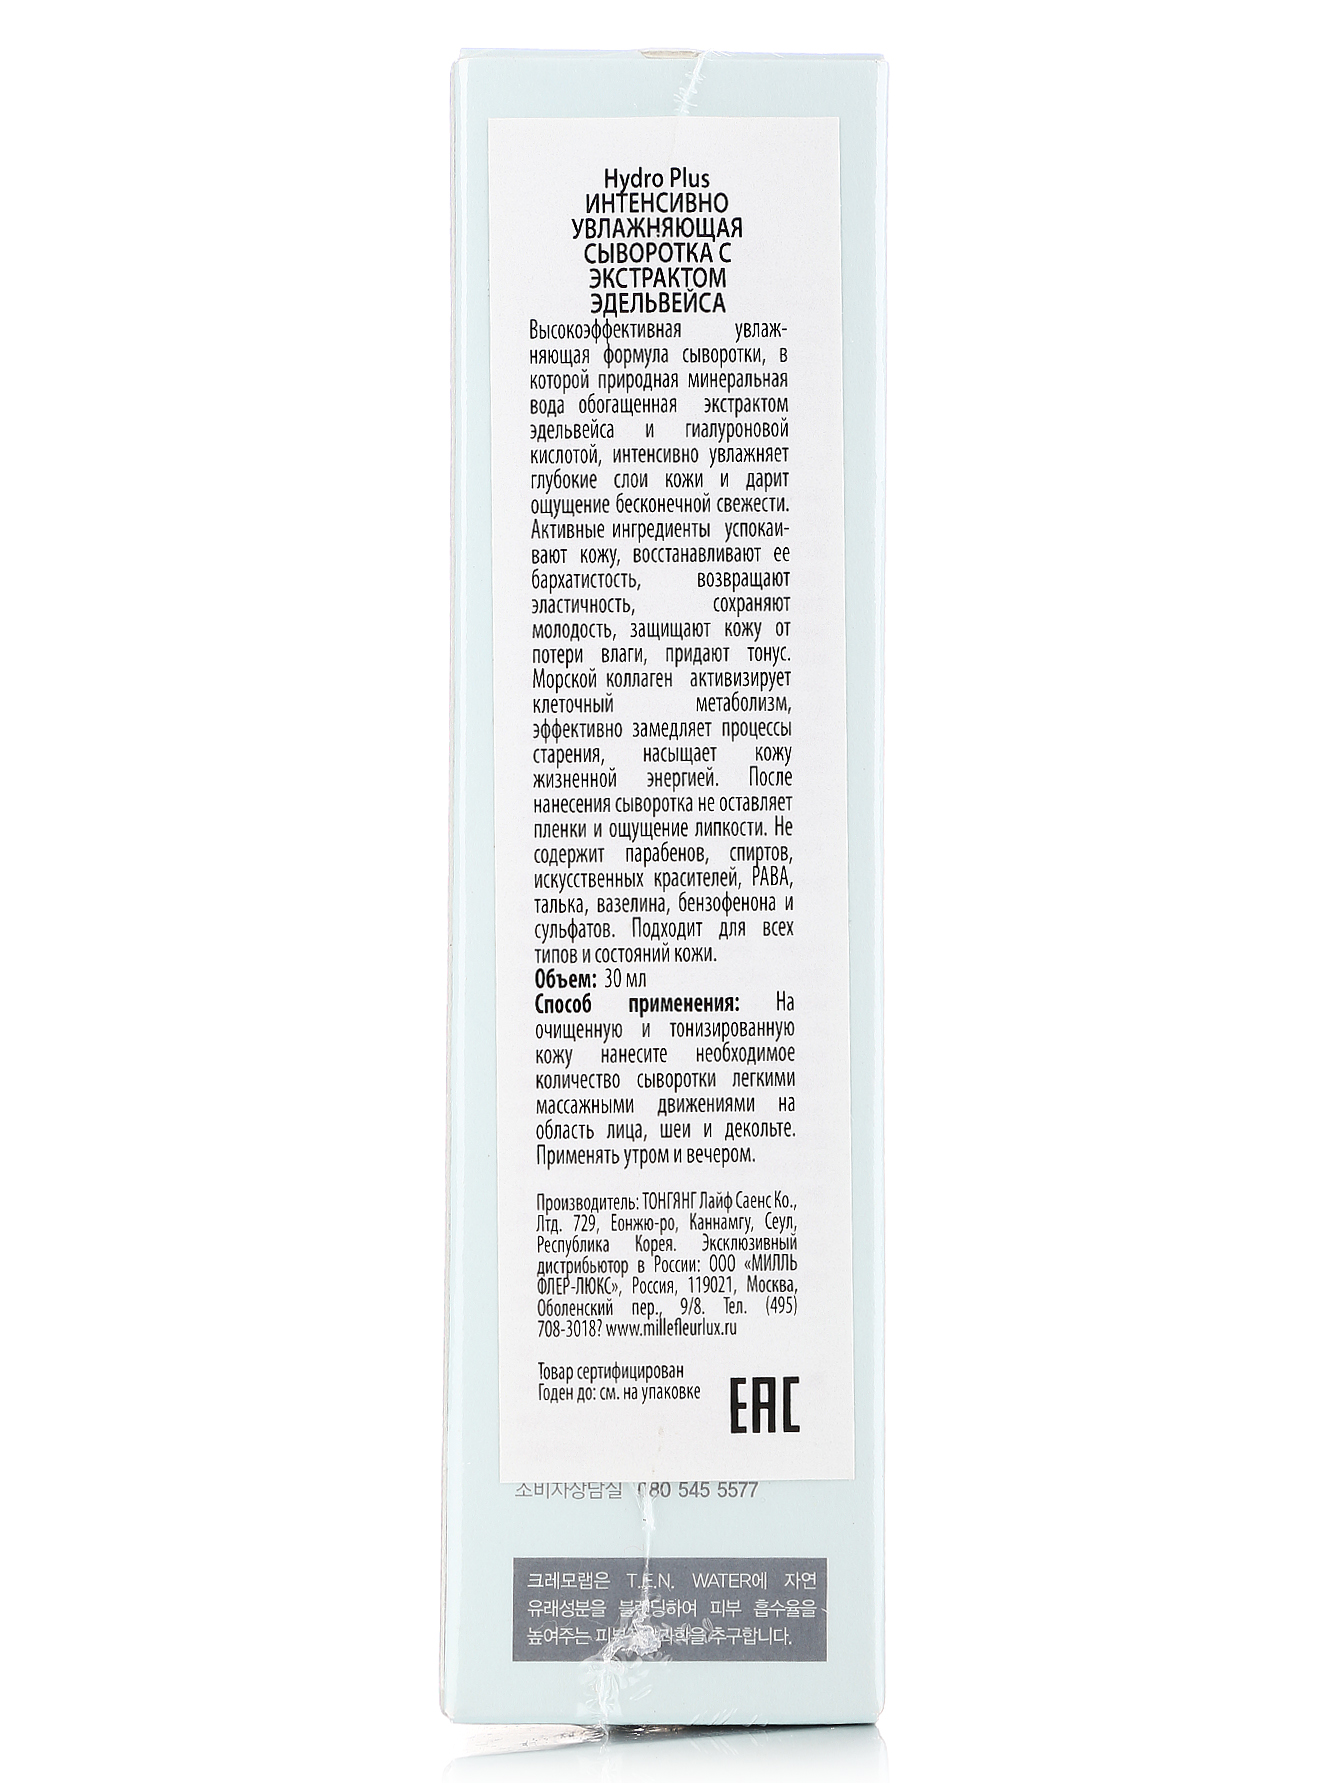  Увлажняющая сыворотка с экстрактом эдельвейса - Skin Care, 30ml - Модель Верх-Низ